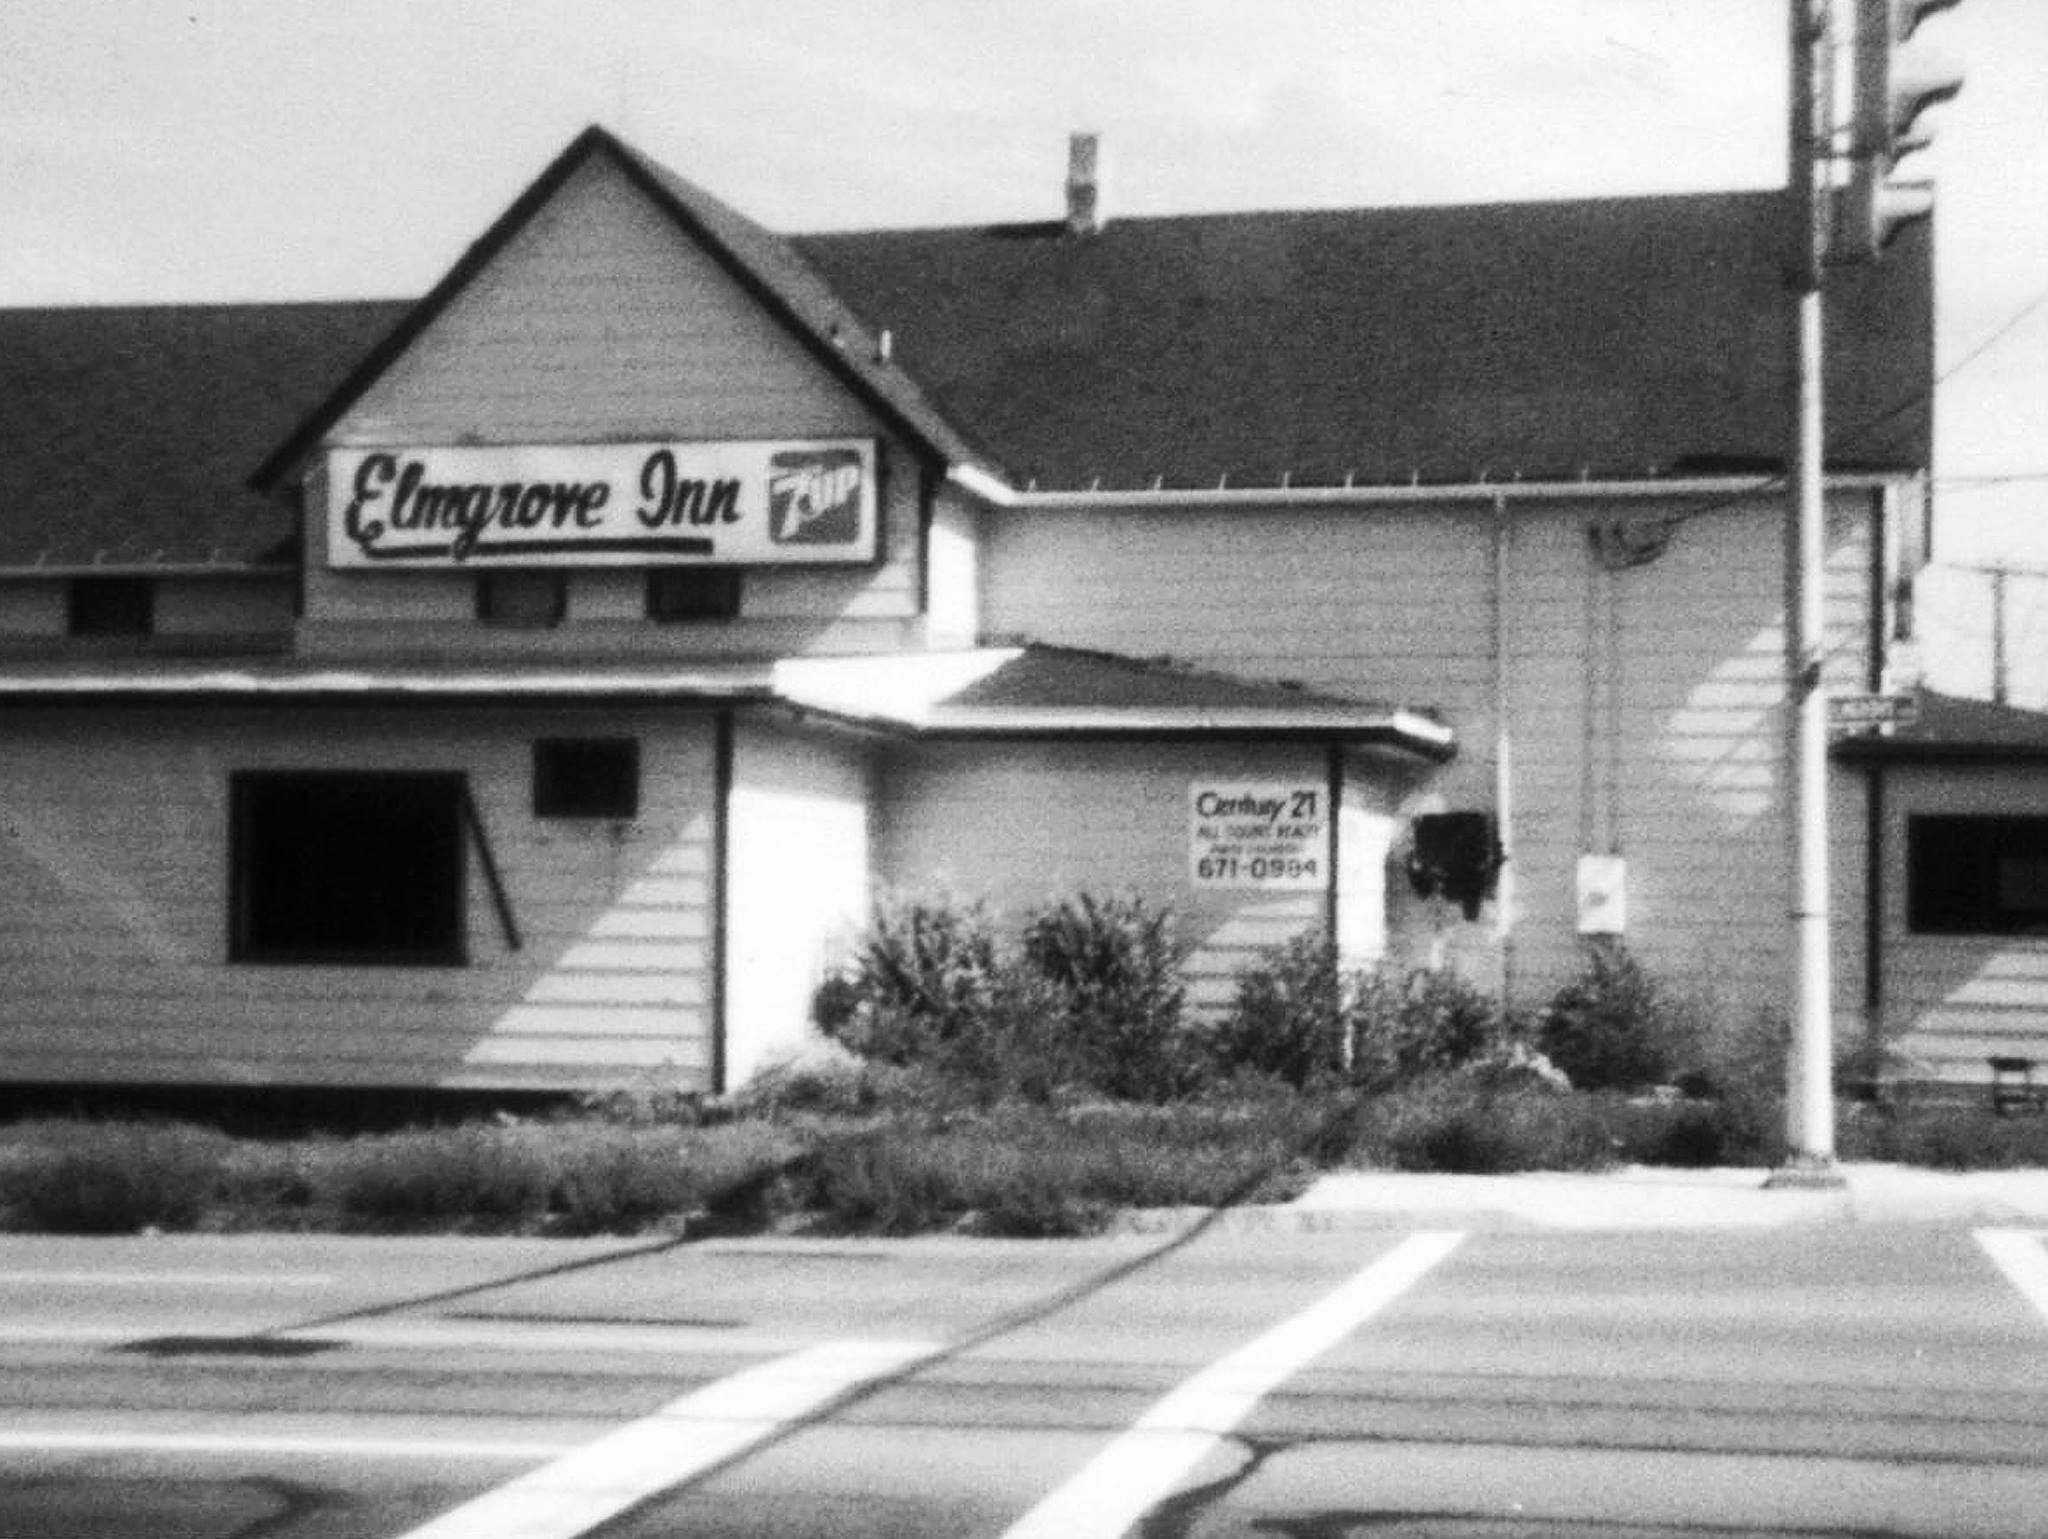 Whatever Happened to ... Elmgrove Inn?